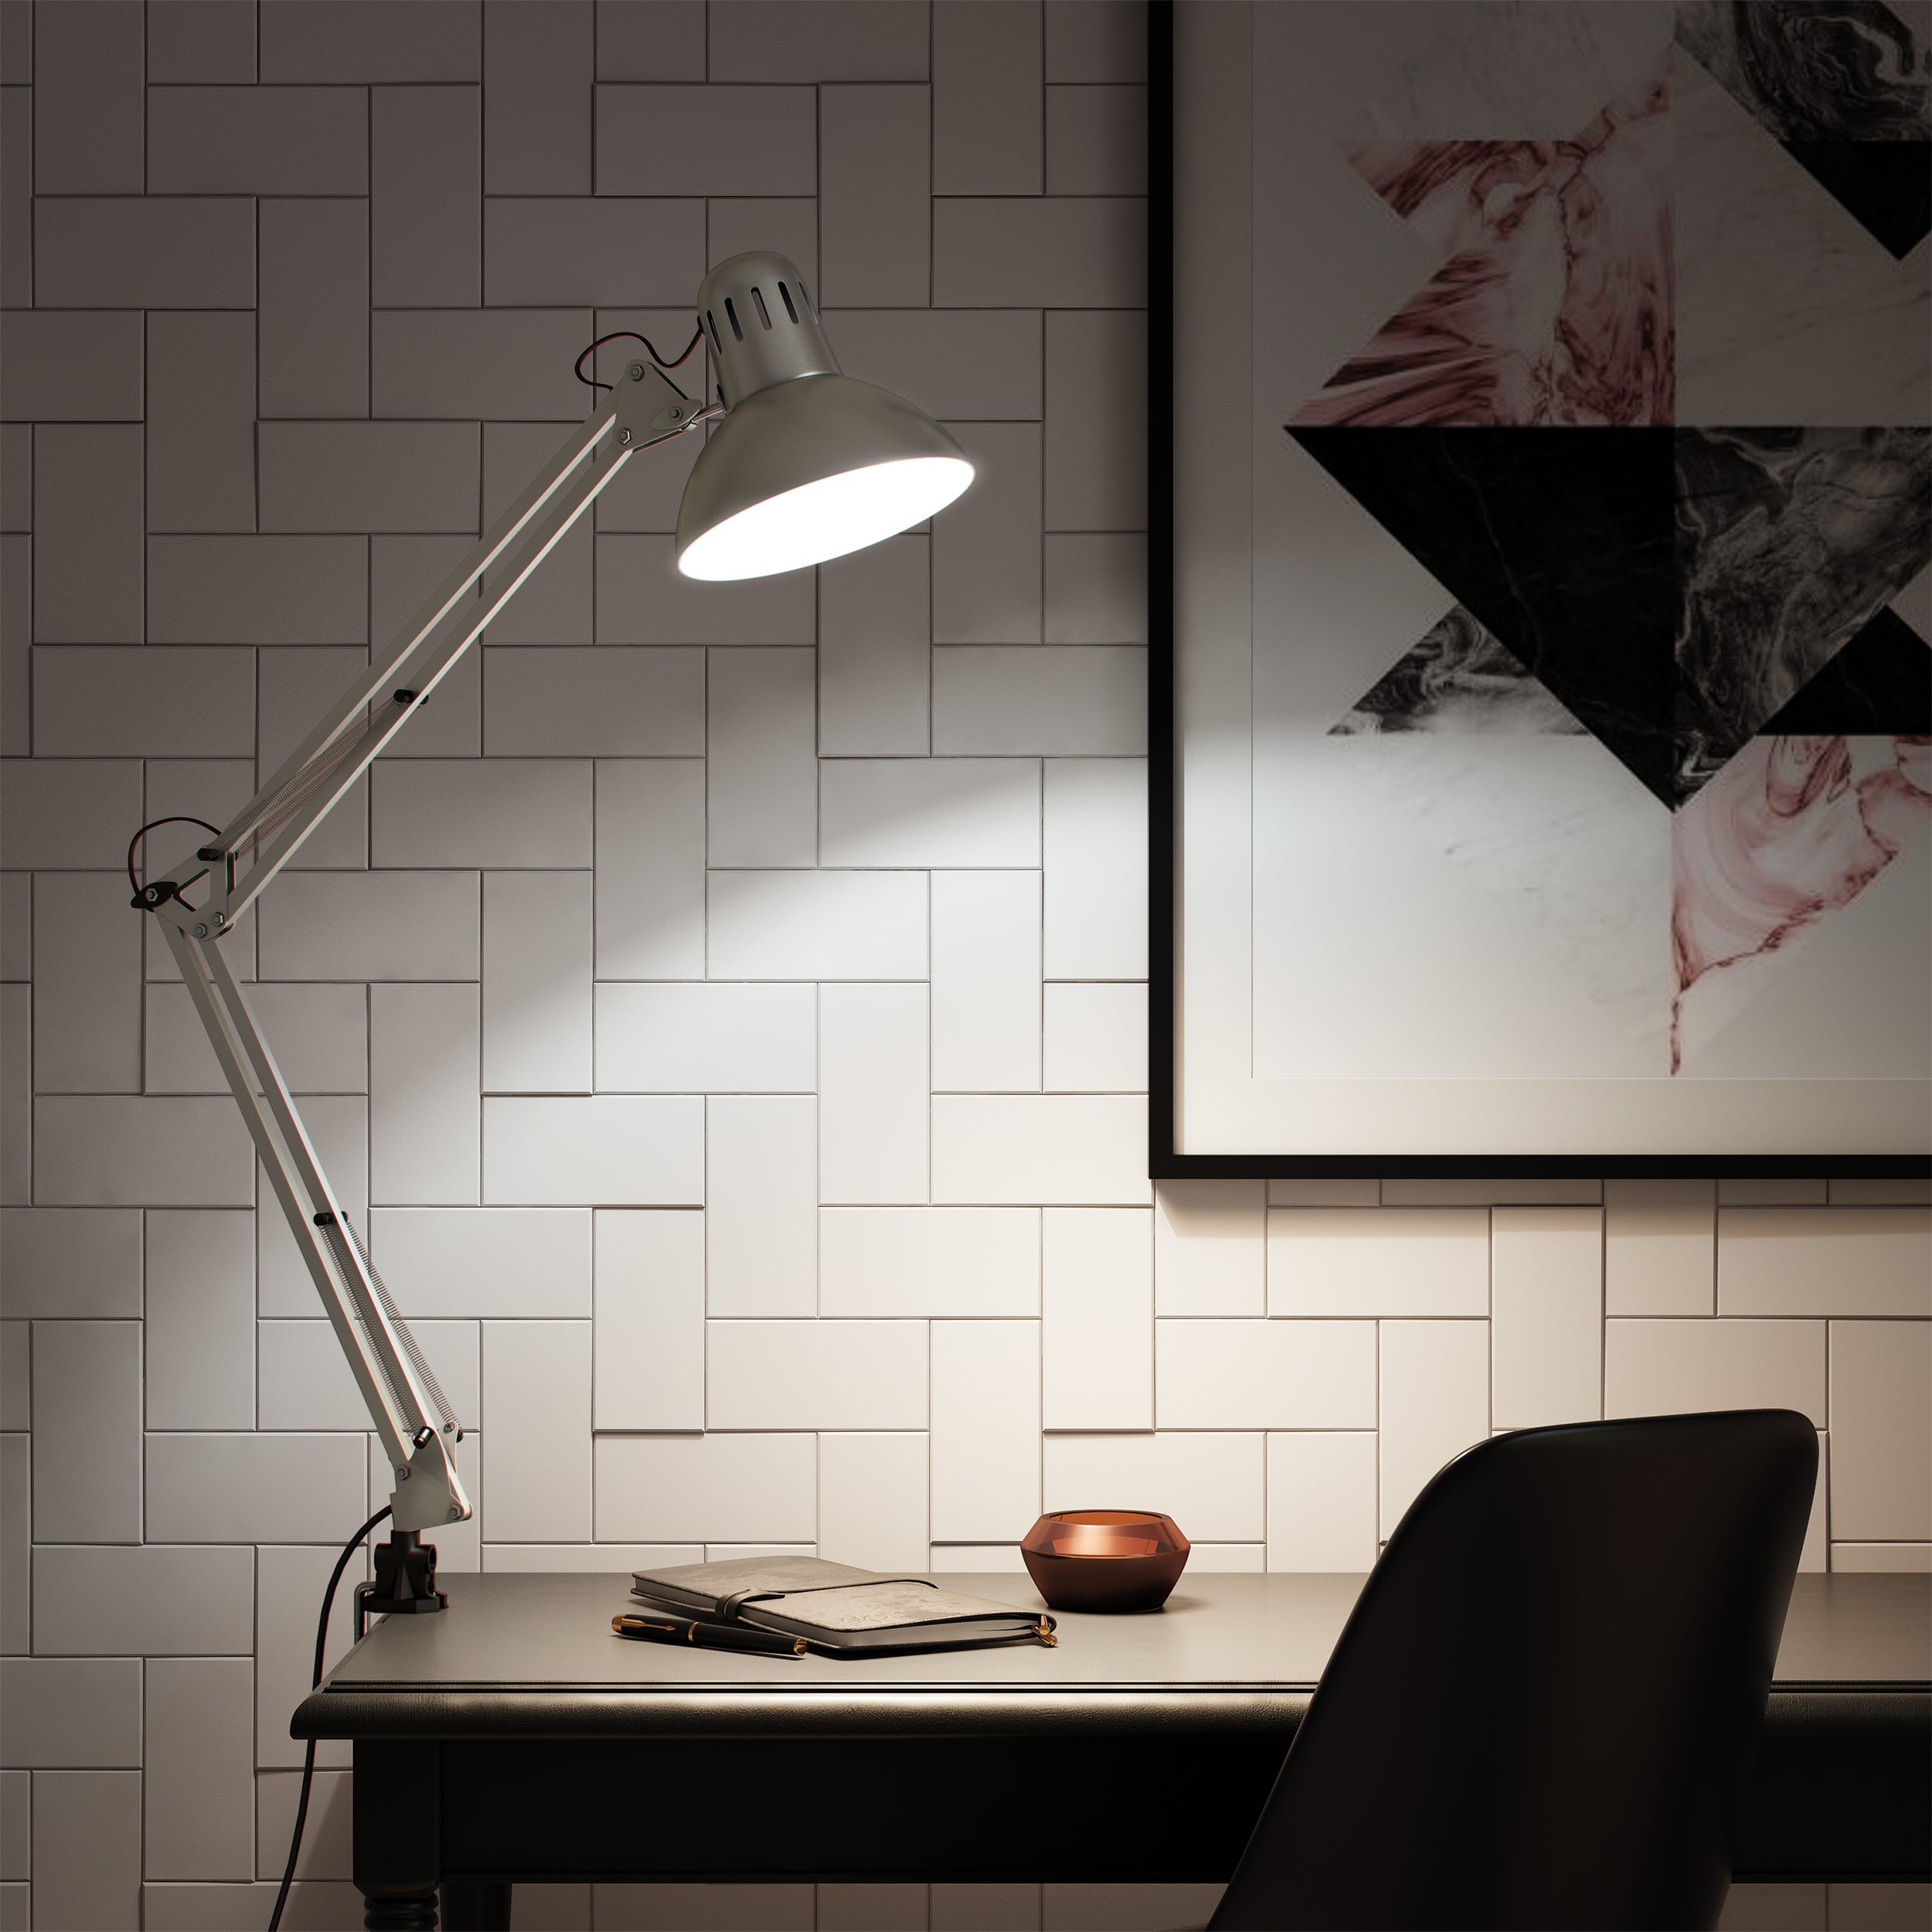 INSPIRE - Lampe de bureau ARQUITECTO - H.60 cm - 1 x E27 60W (non inclus) -  Lampe ajustable à bras articulé - Lampe architecte à clipser - Métal et